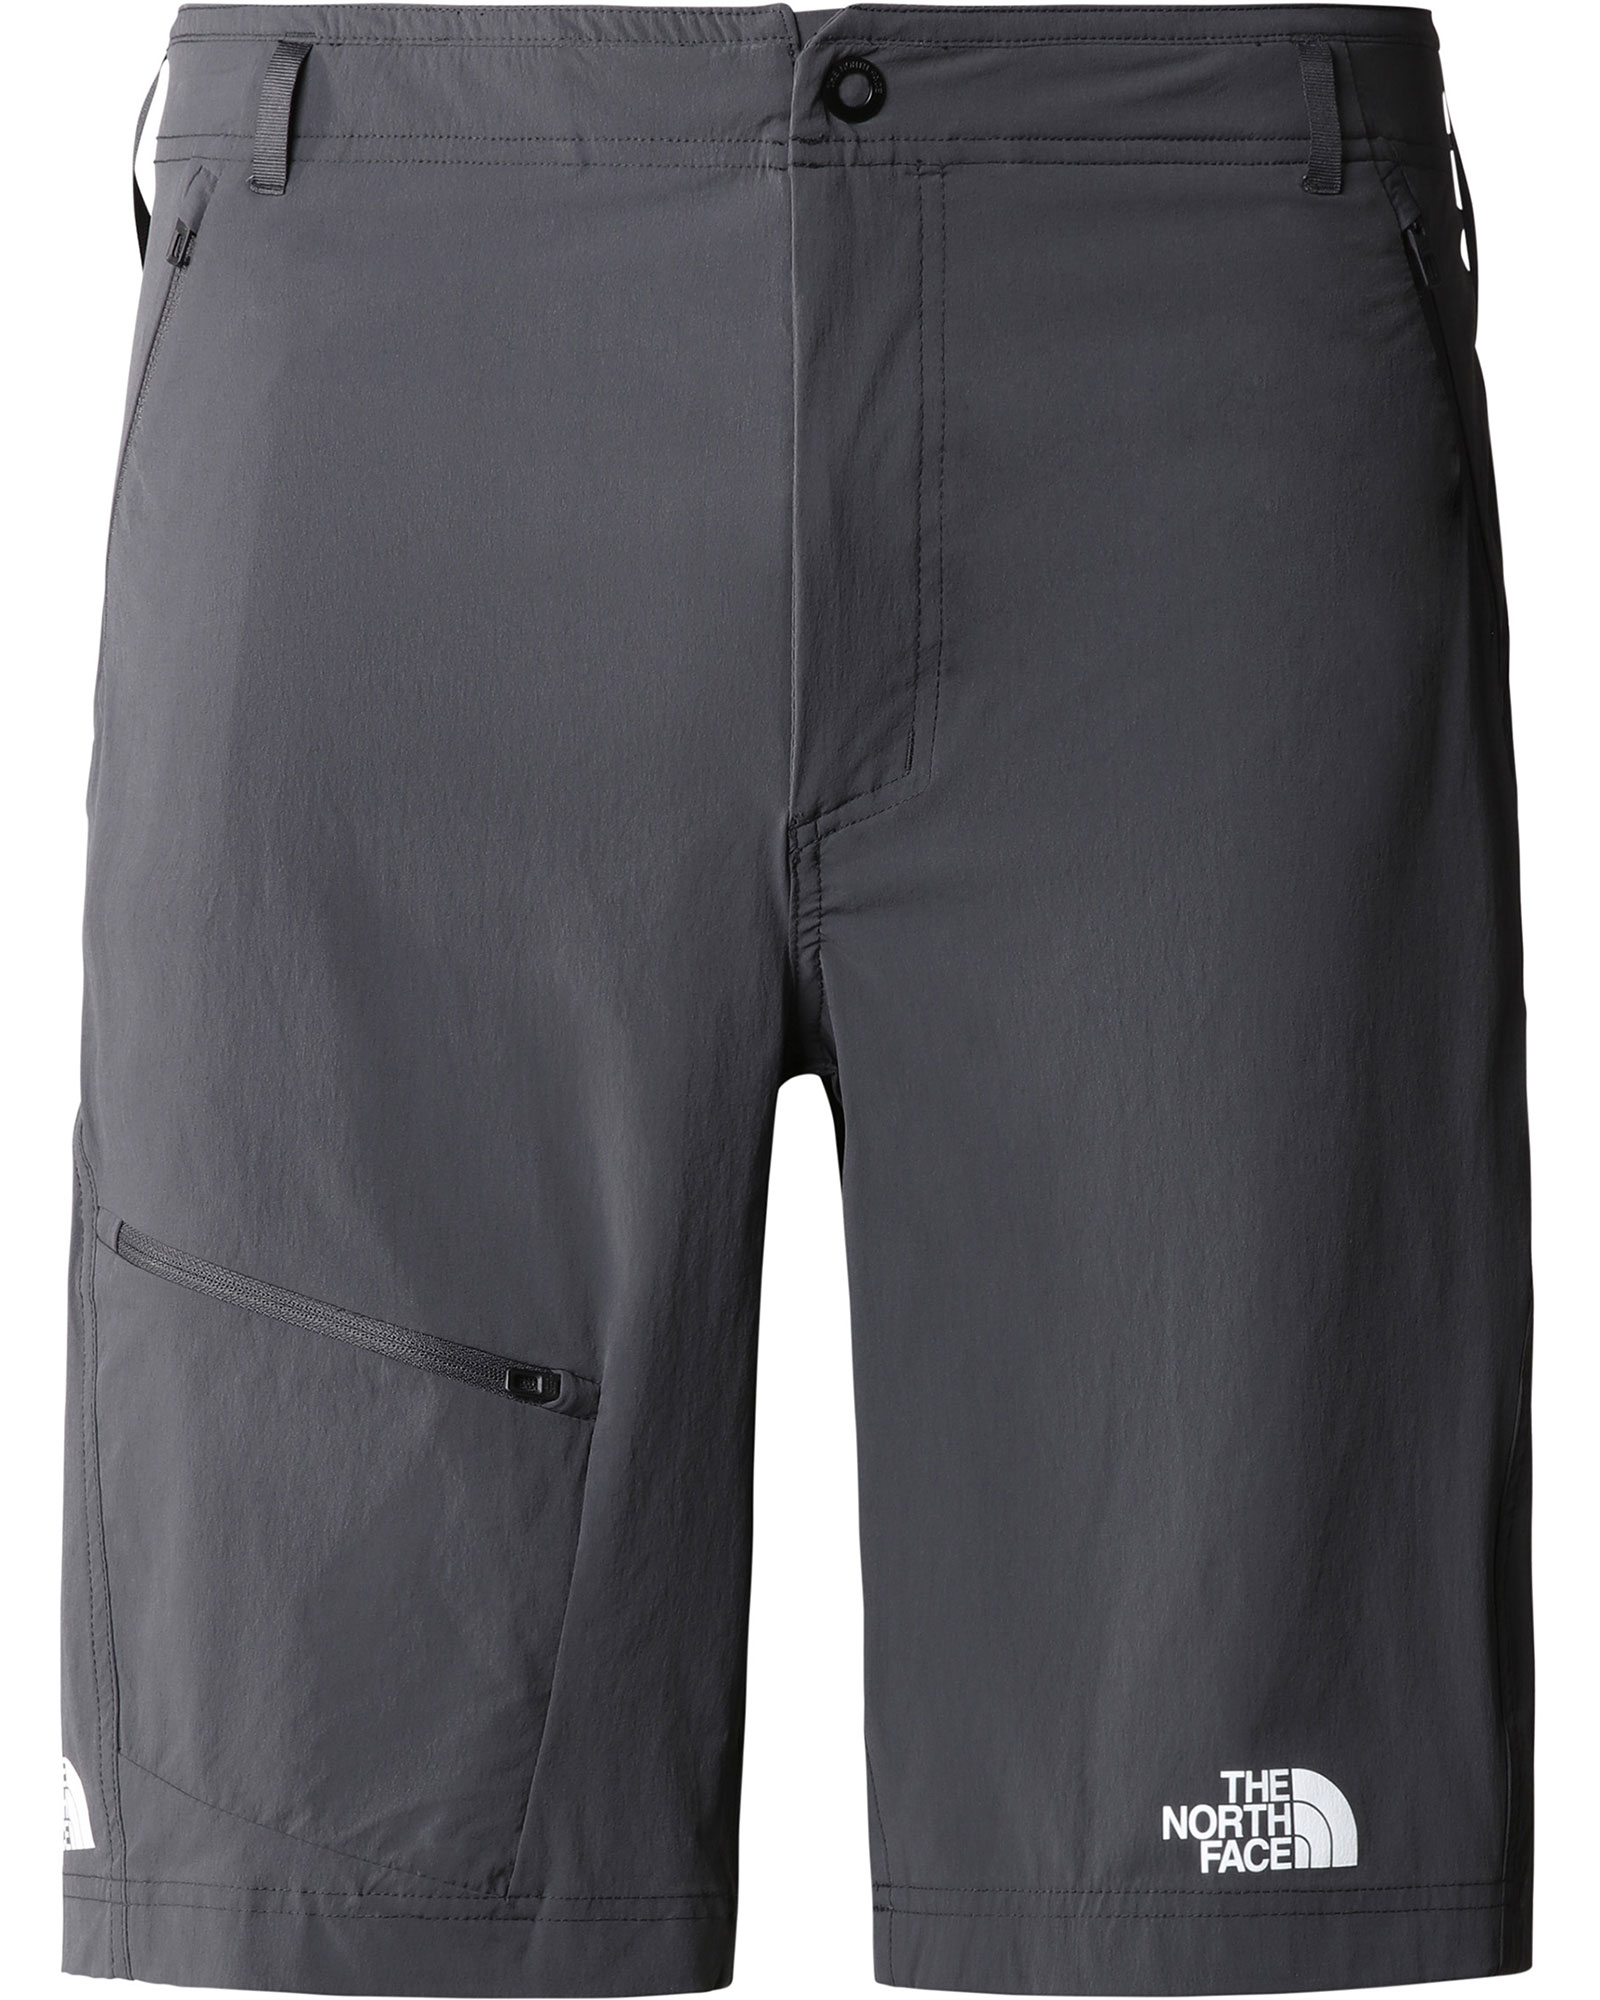 The North Face Men’s Speedlight Slim Tapered Shorts - Asphalt Grey EU 34